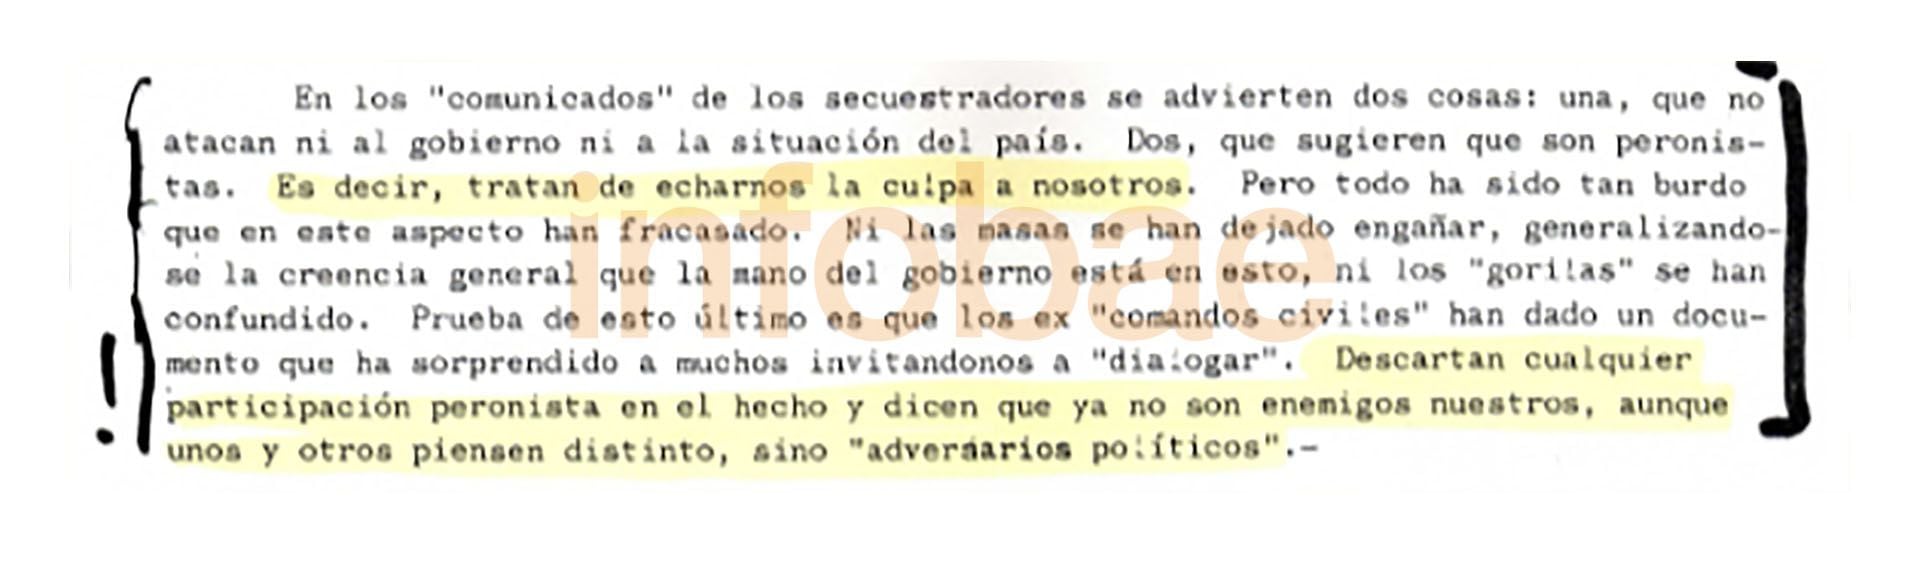 Párrafo de la carta de Paladino a Pérón del 3 de junio de 1970